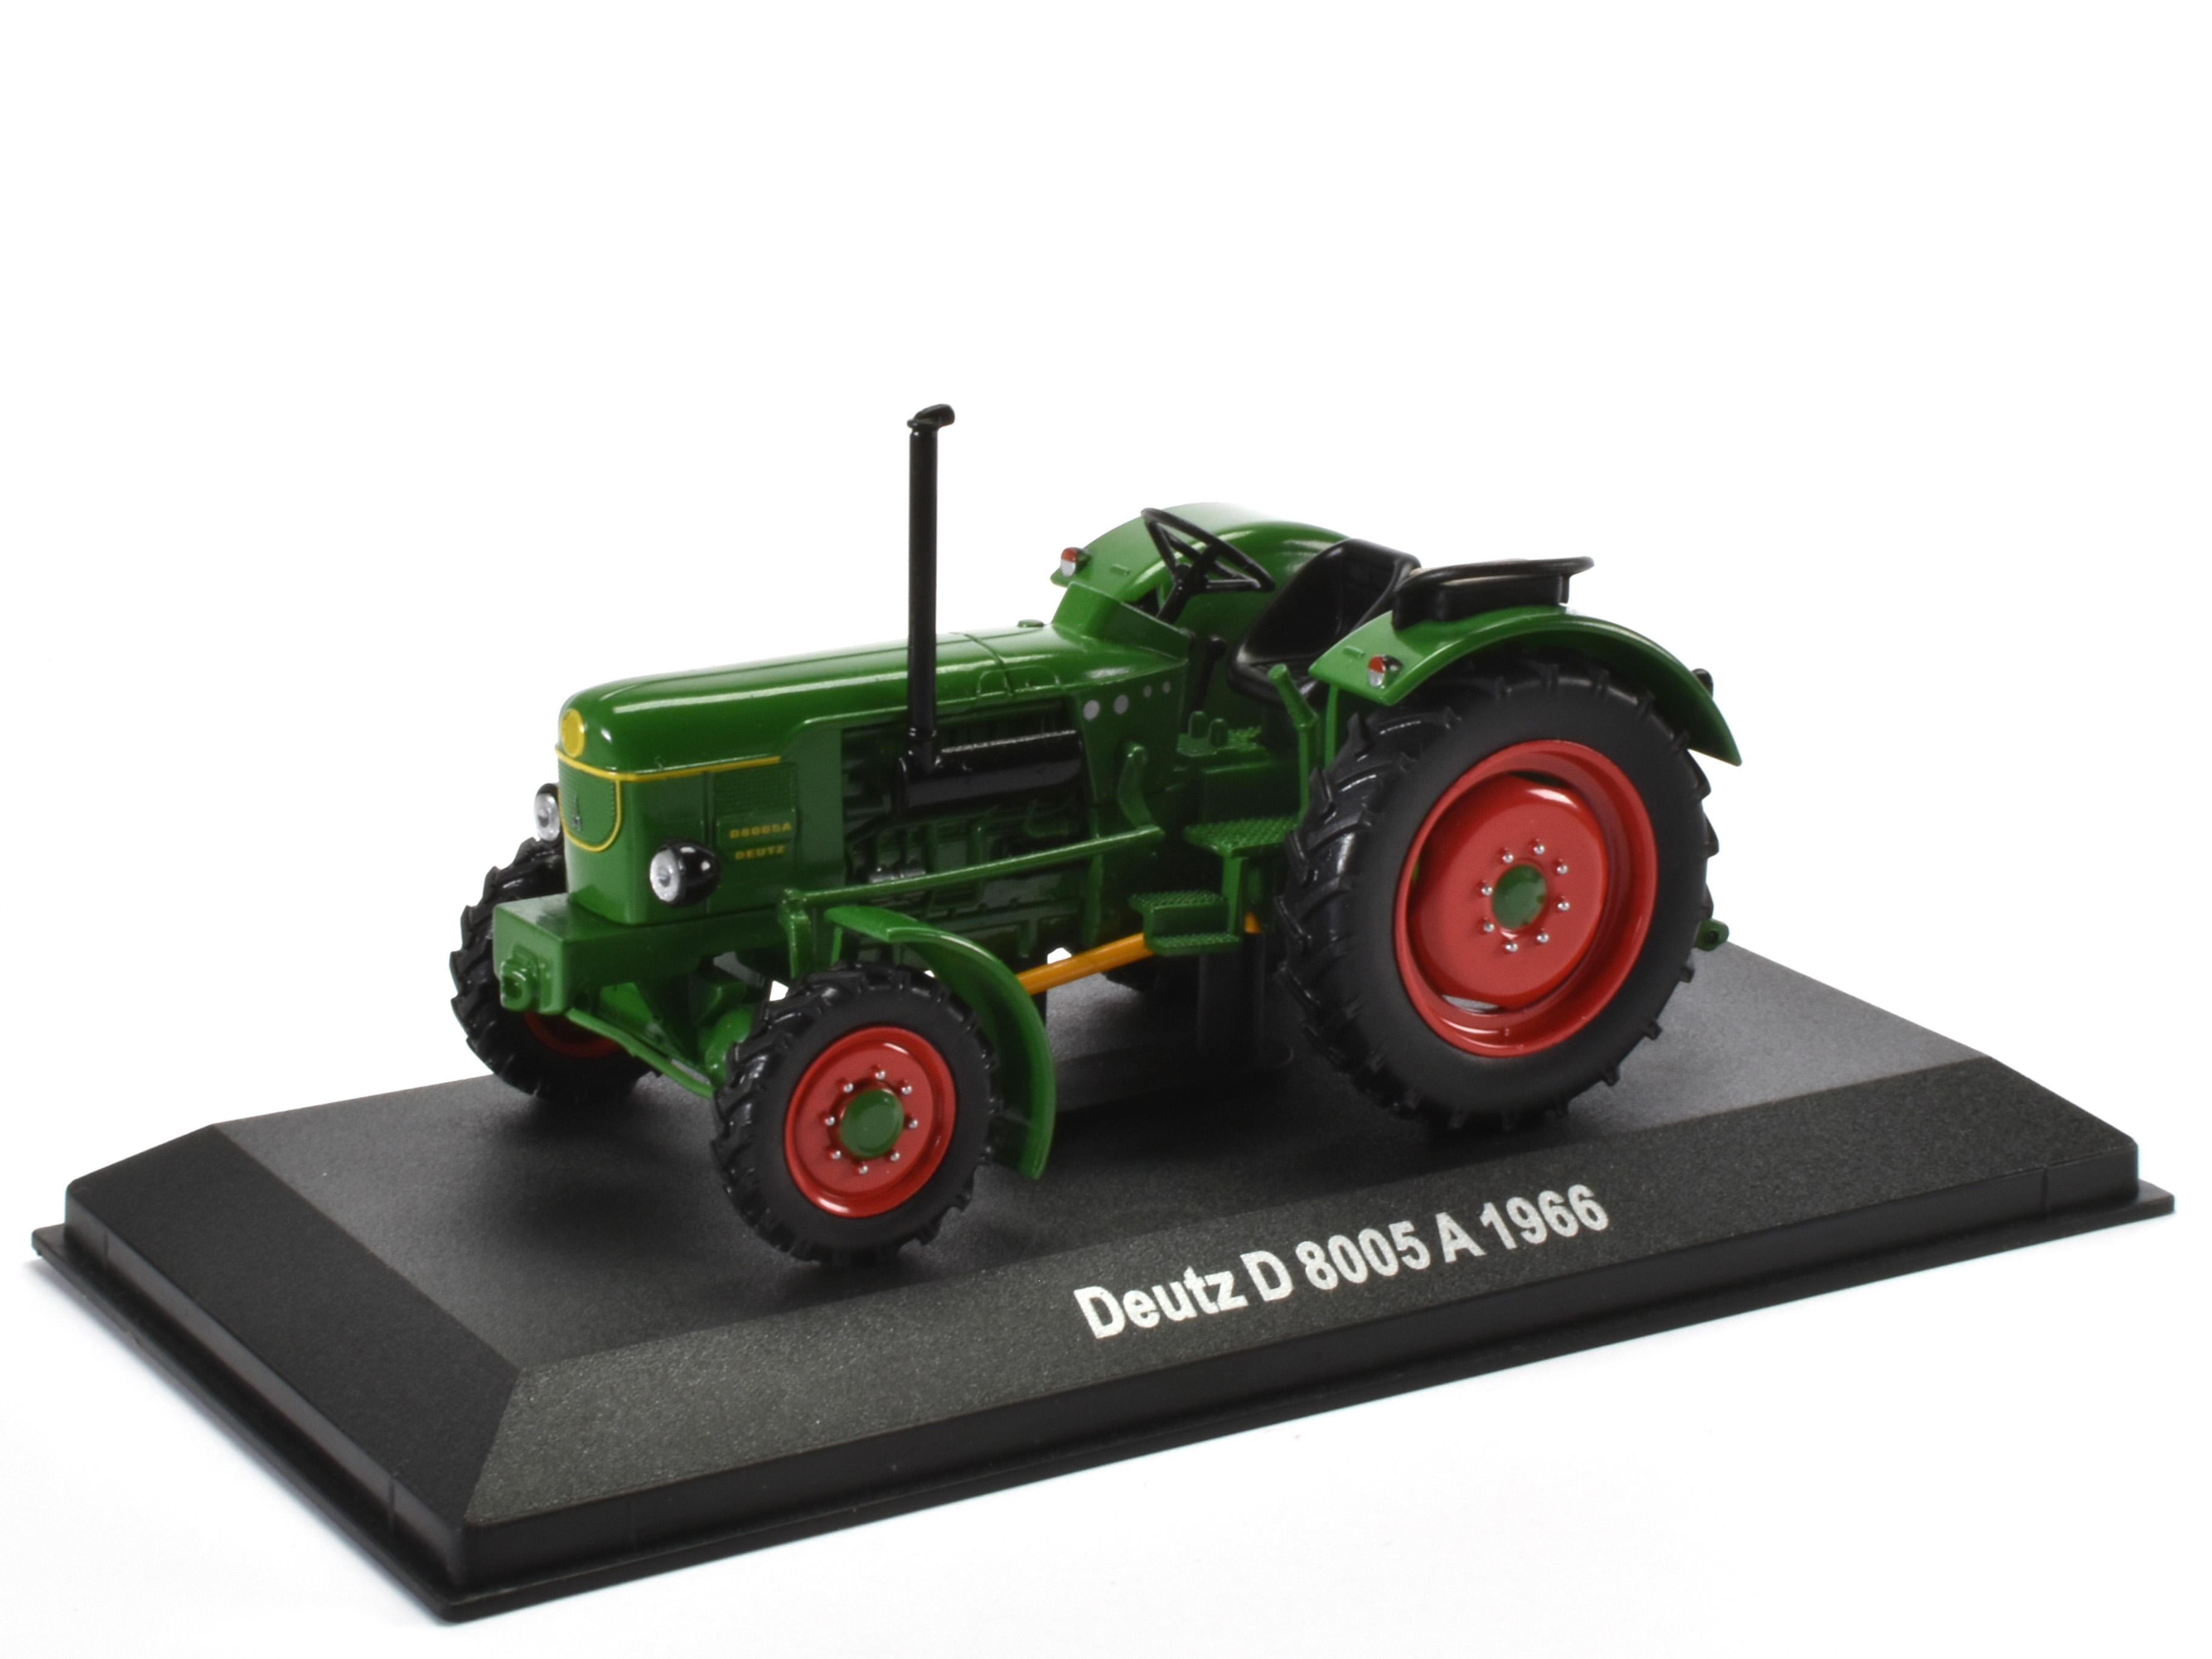 Deutz D 8005 A Tractor - 1966